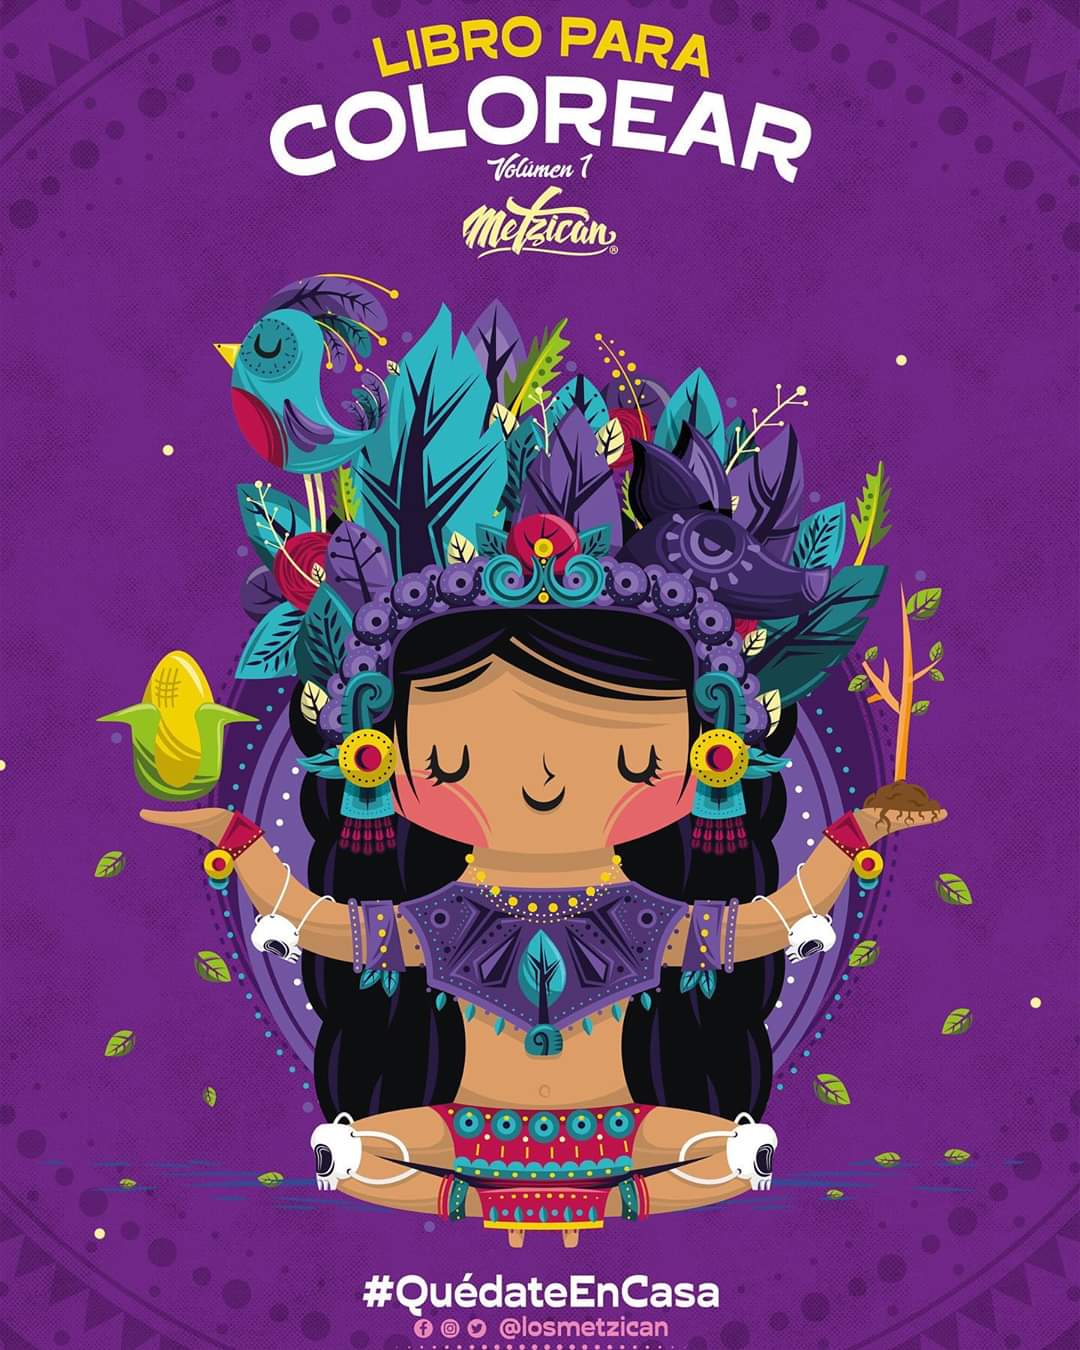 El Estudio de diseño mexiquense “Metzican” lanzó un libro para colorear gratuito.